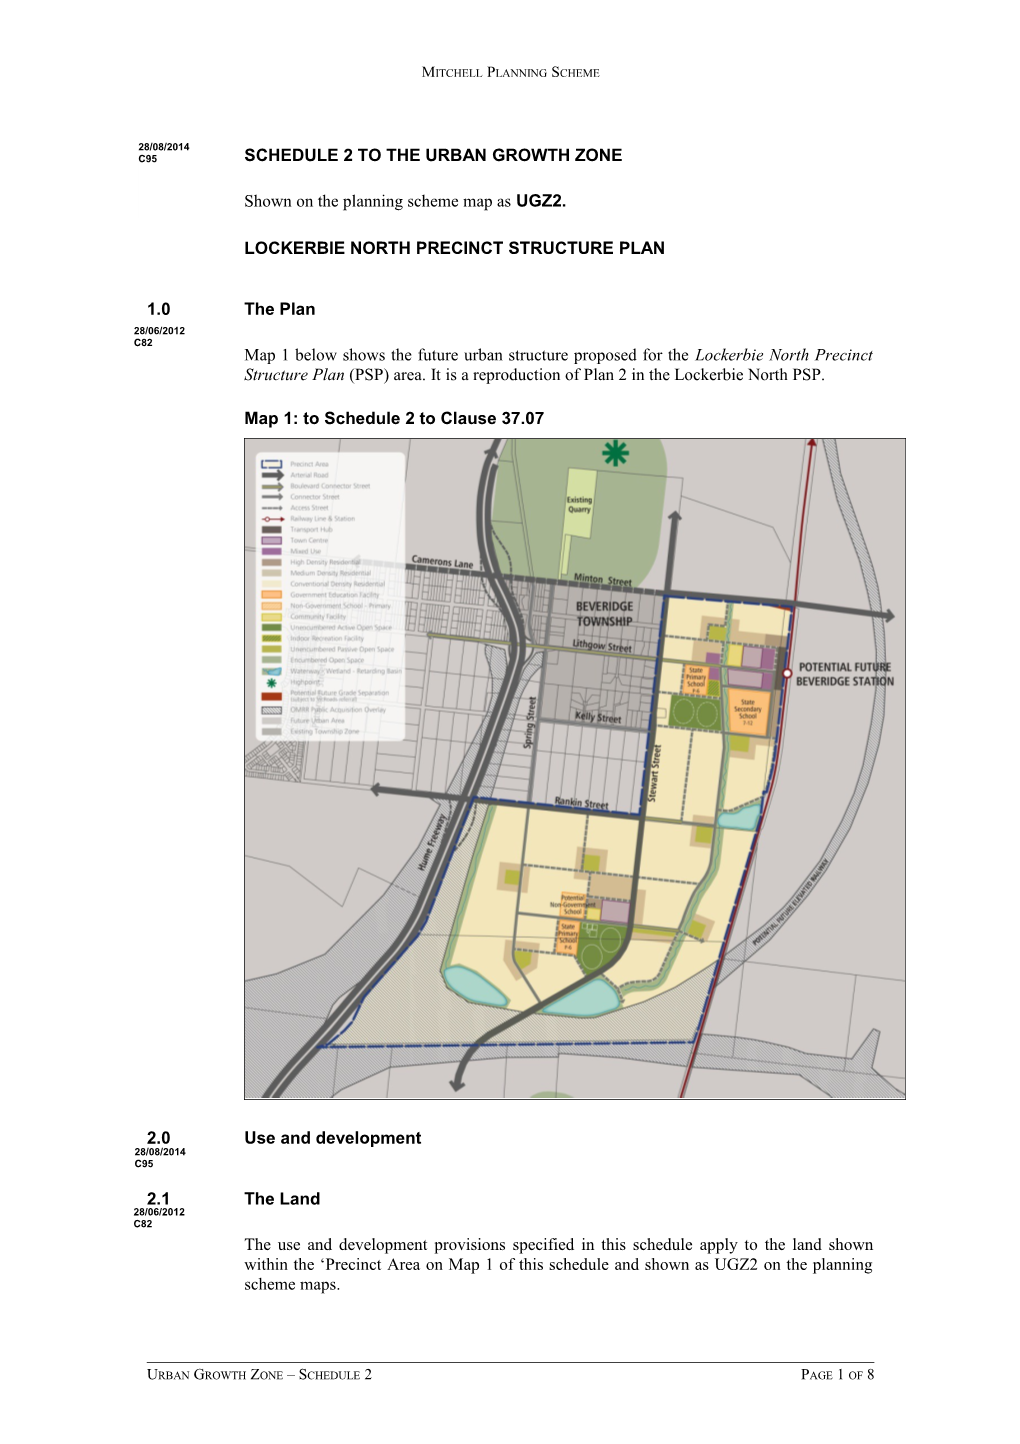 Lockerbie North Precinct Structure Plan